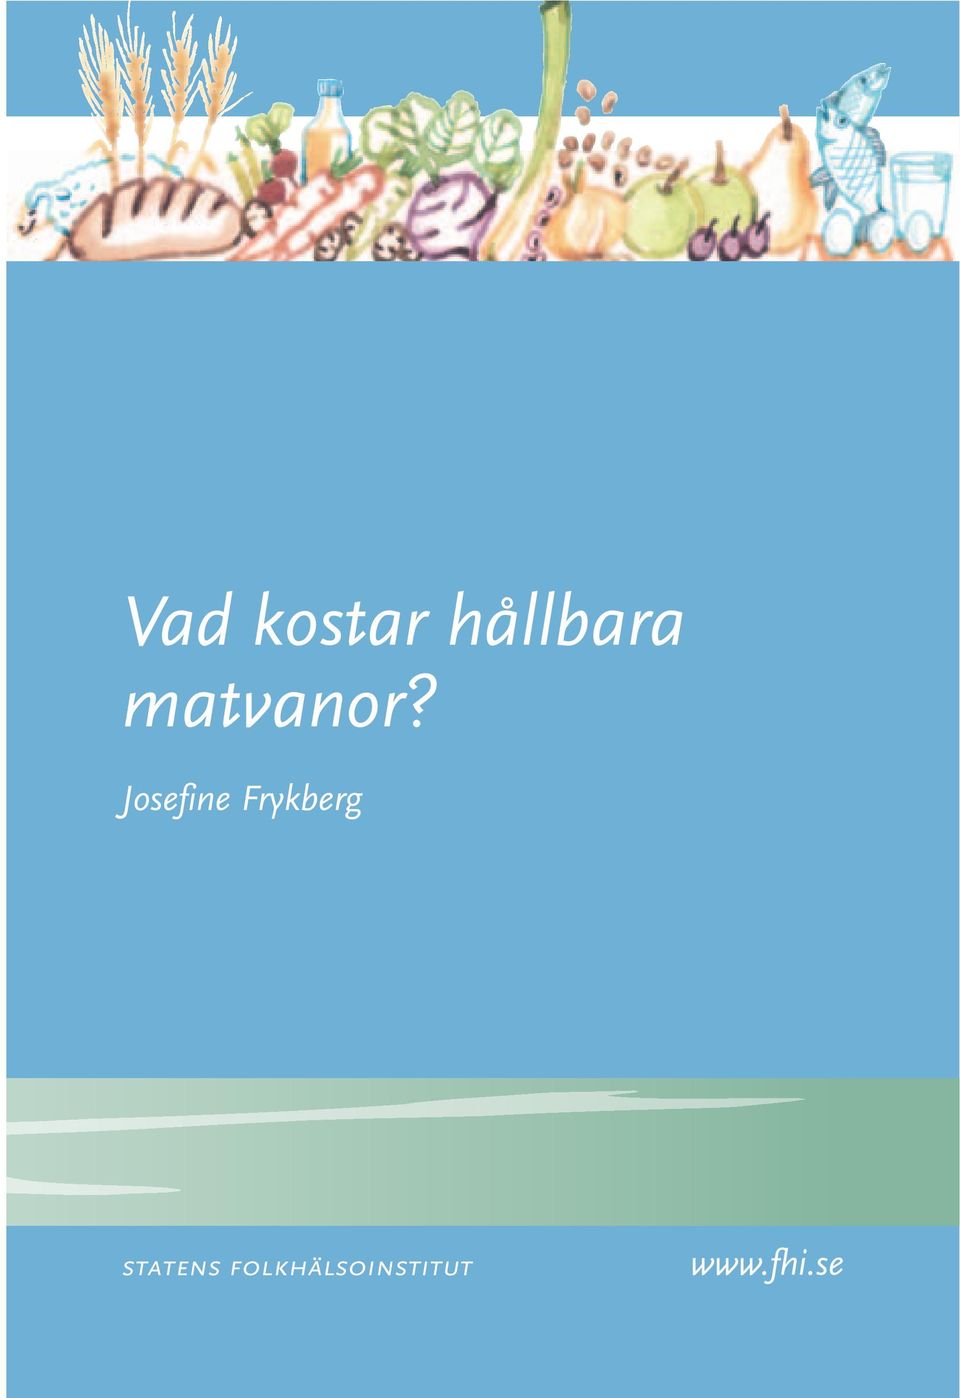 Josefine Frykberg